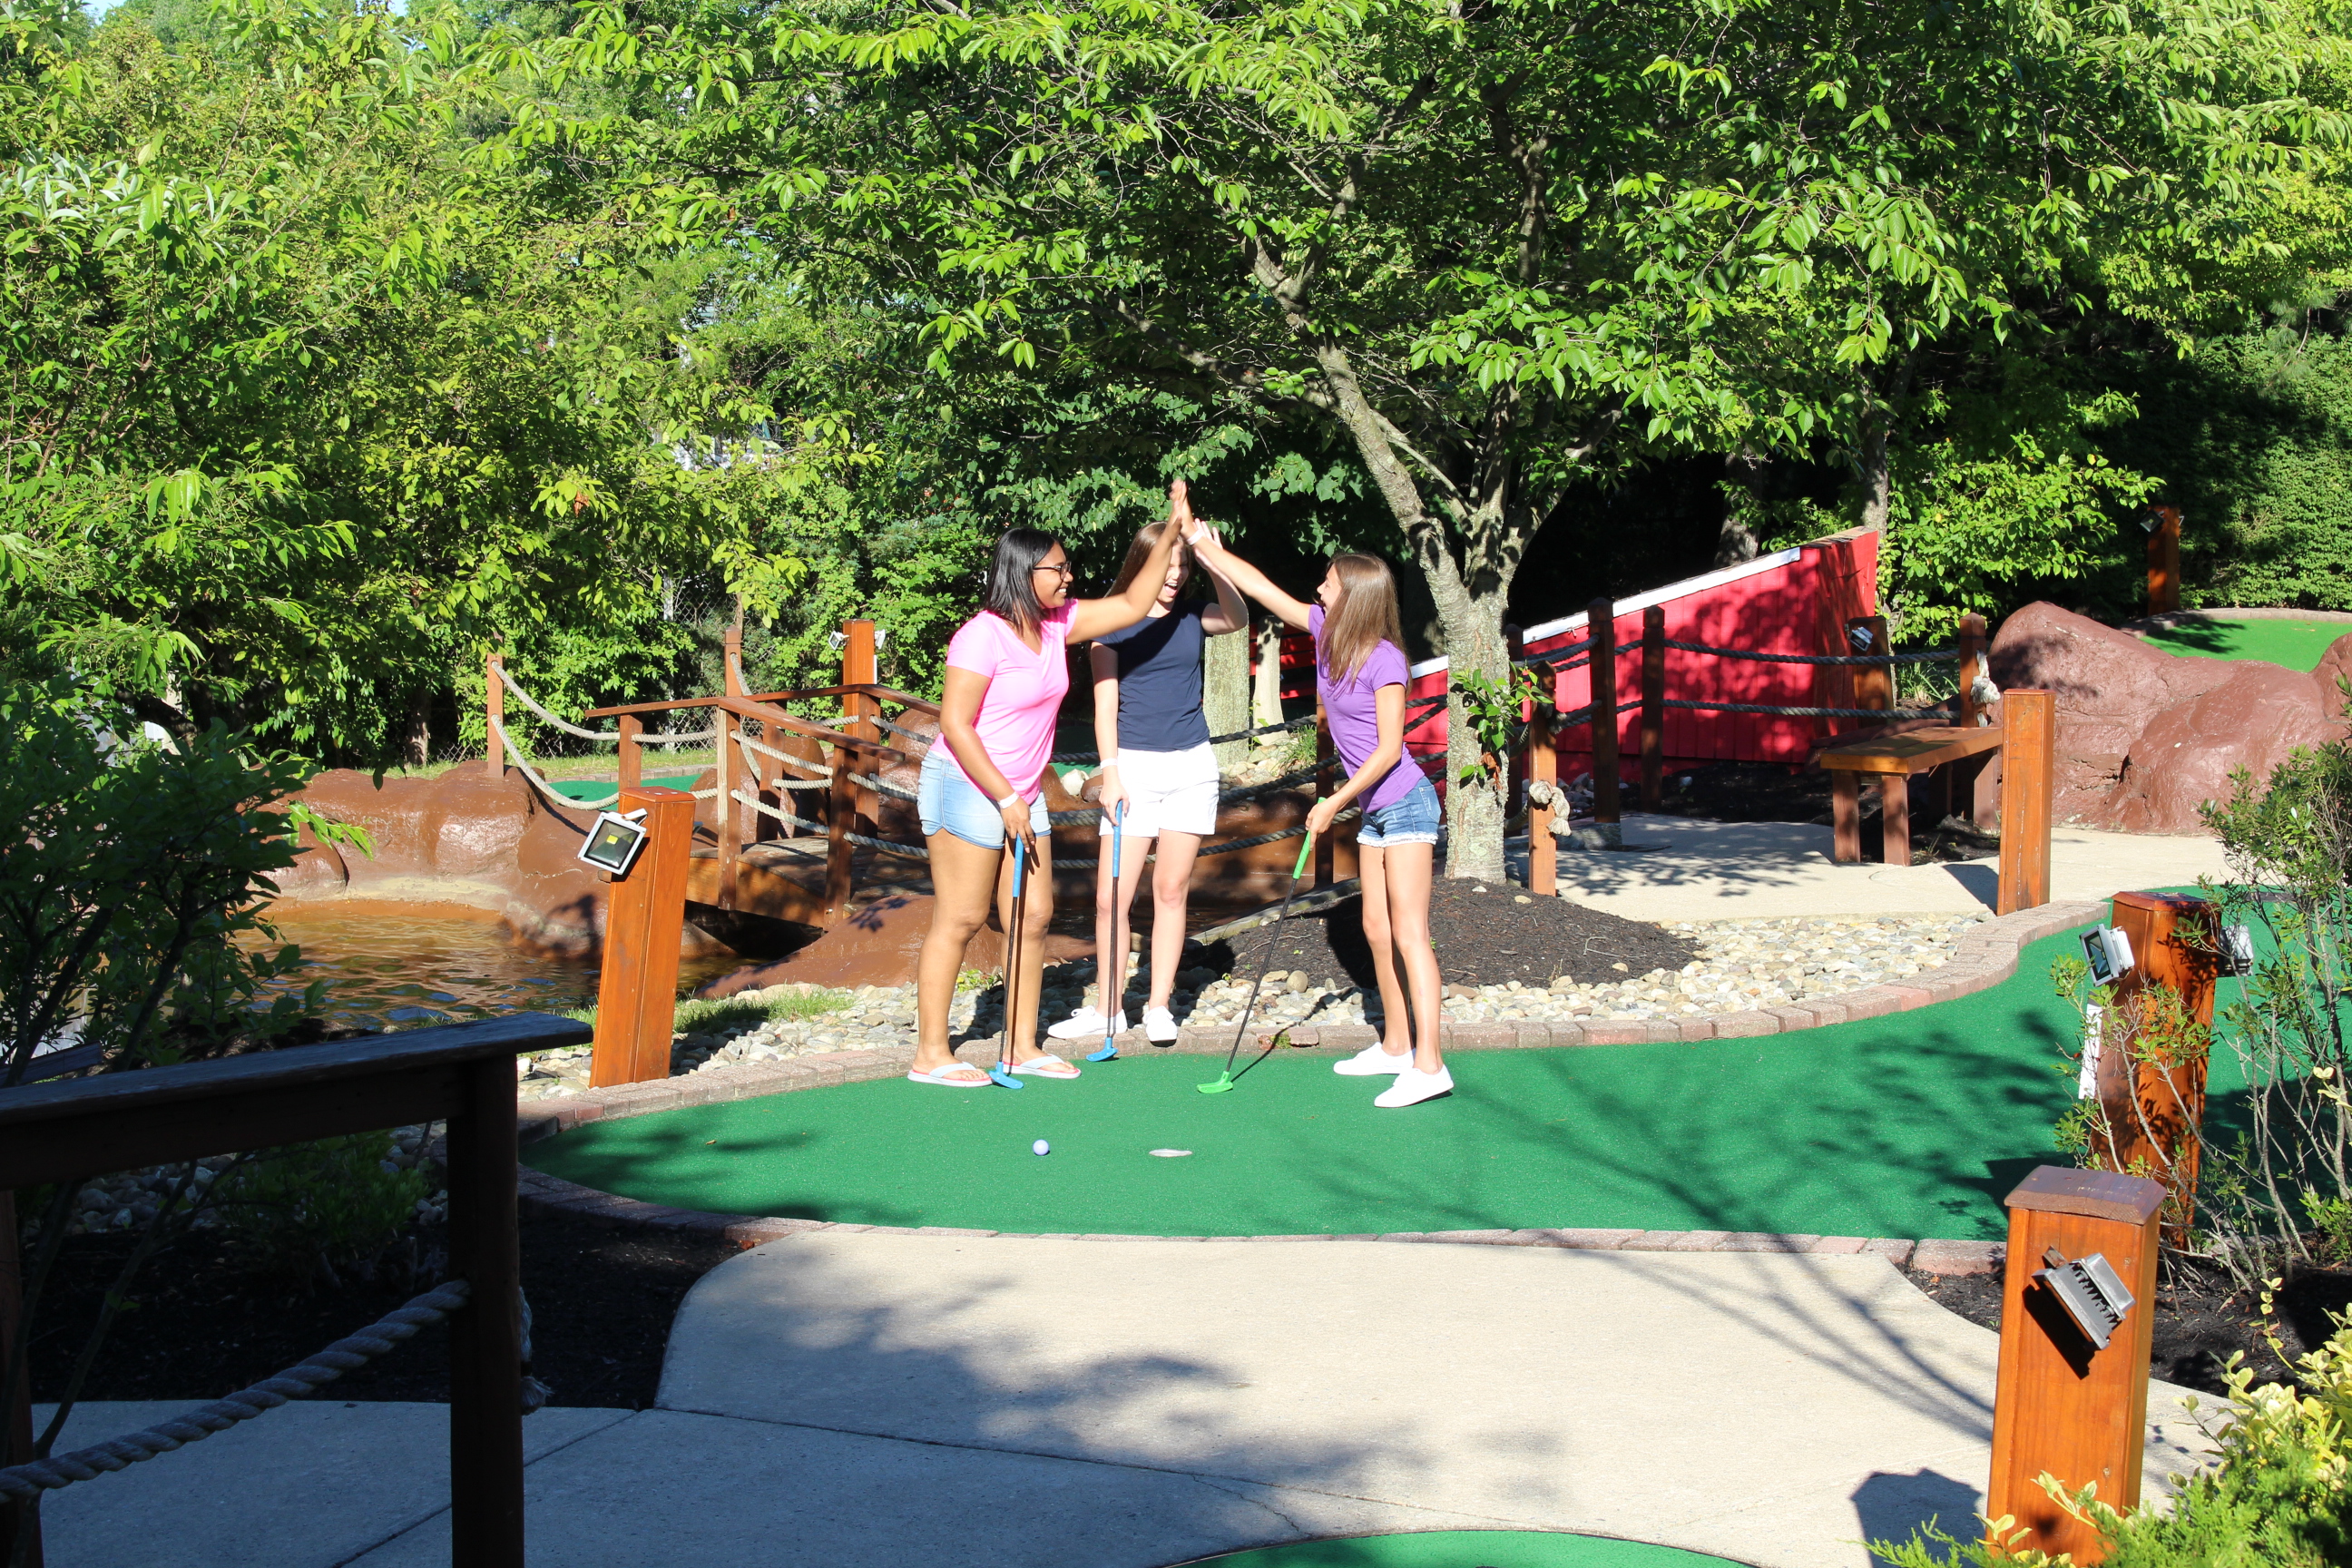 The Funplex Mount Laurel Outdoor Mini Golf Courses in New Jersey